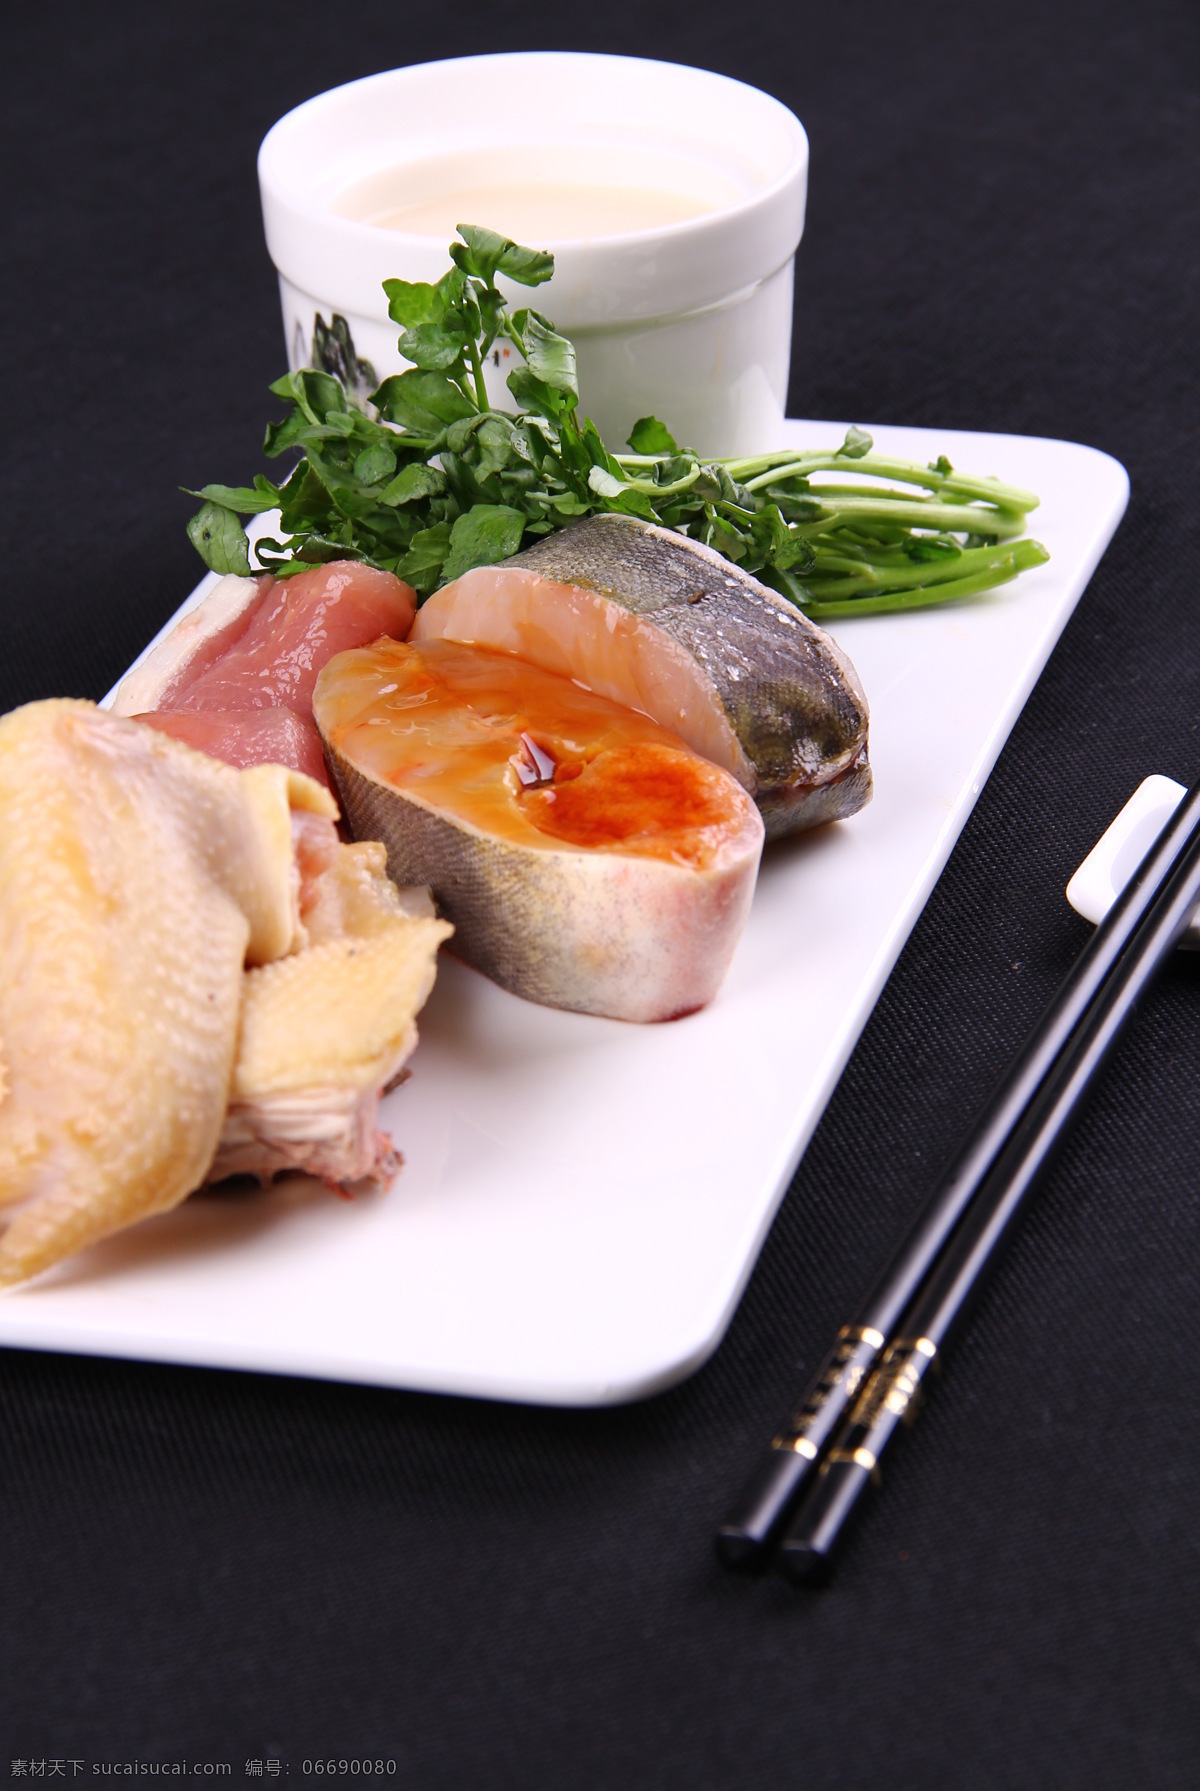 中餐生鱼 中餐 美食 中式 粤菜 凉菜 热菜 炖品 西洋菜 生鱼 传统美食 餐饮美食